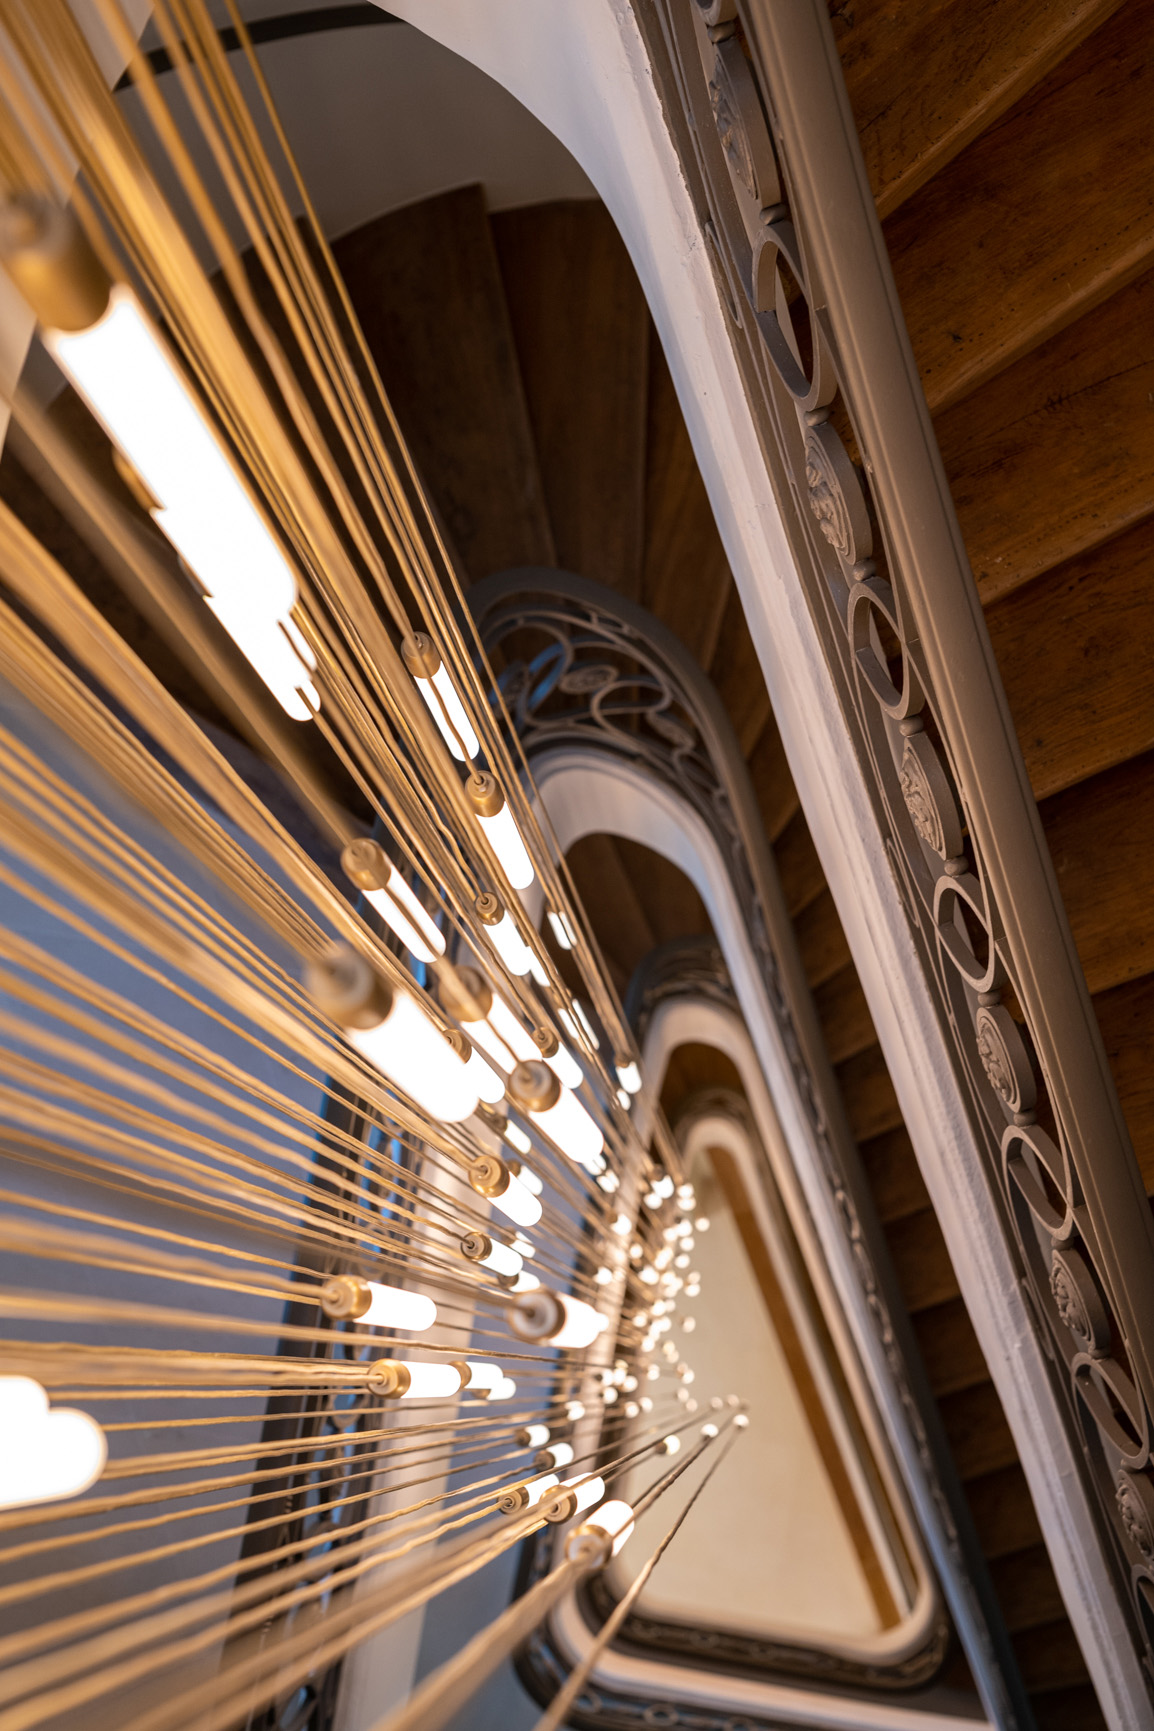 Luminaires dorés au centre d'un escalier monumental en bois et ferronneries dans un immeuble de bureaux sur la place de la Bourse.